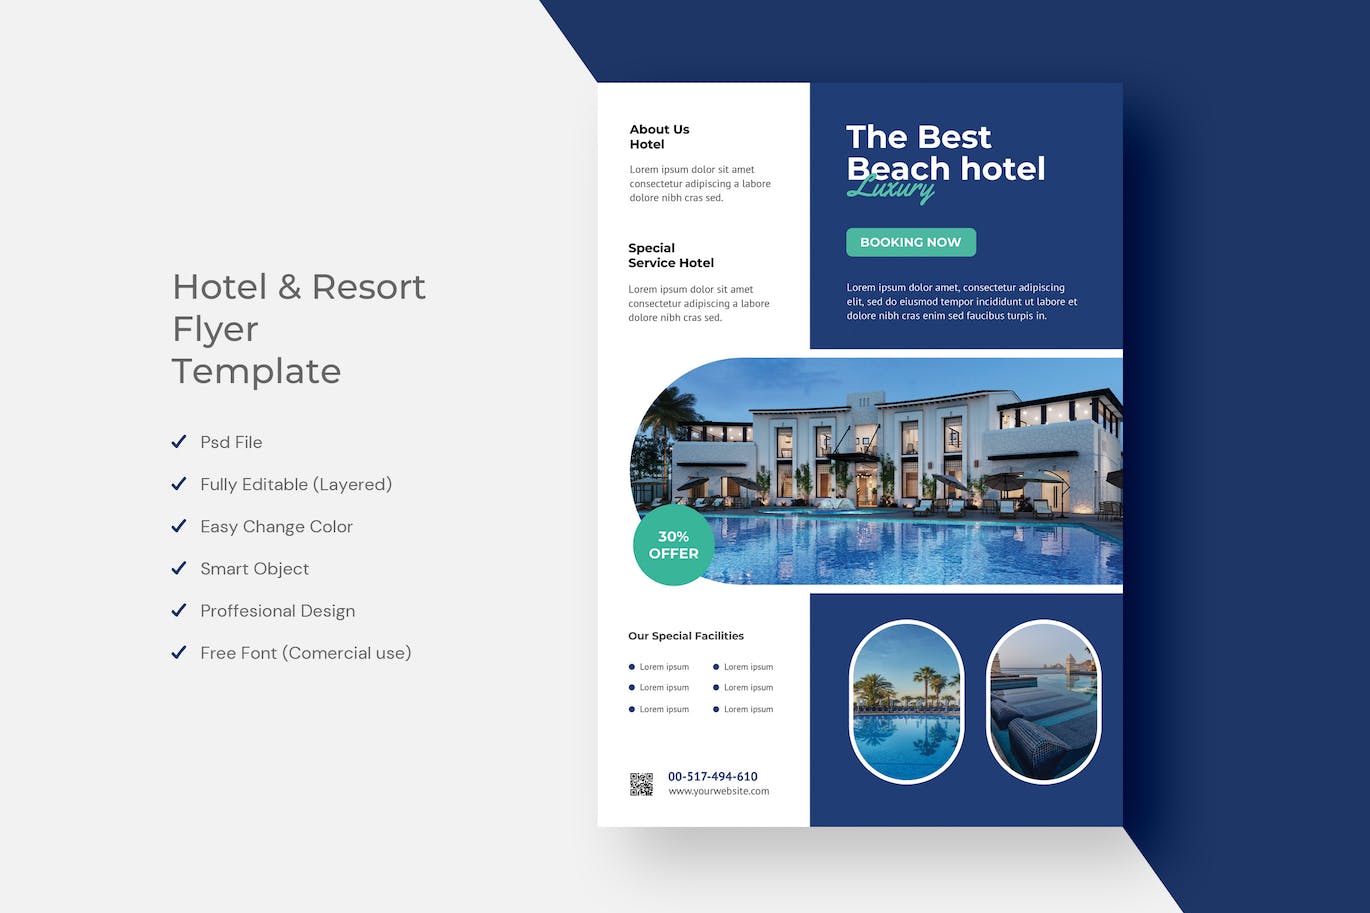 酒店和度假村海报模板 Hotel & Resort Flyer 设计素材 第1张